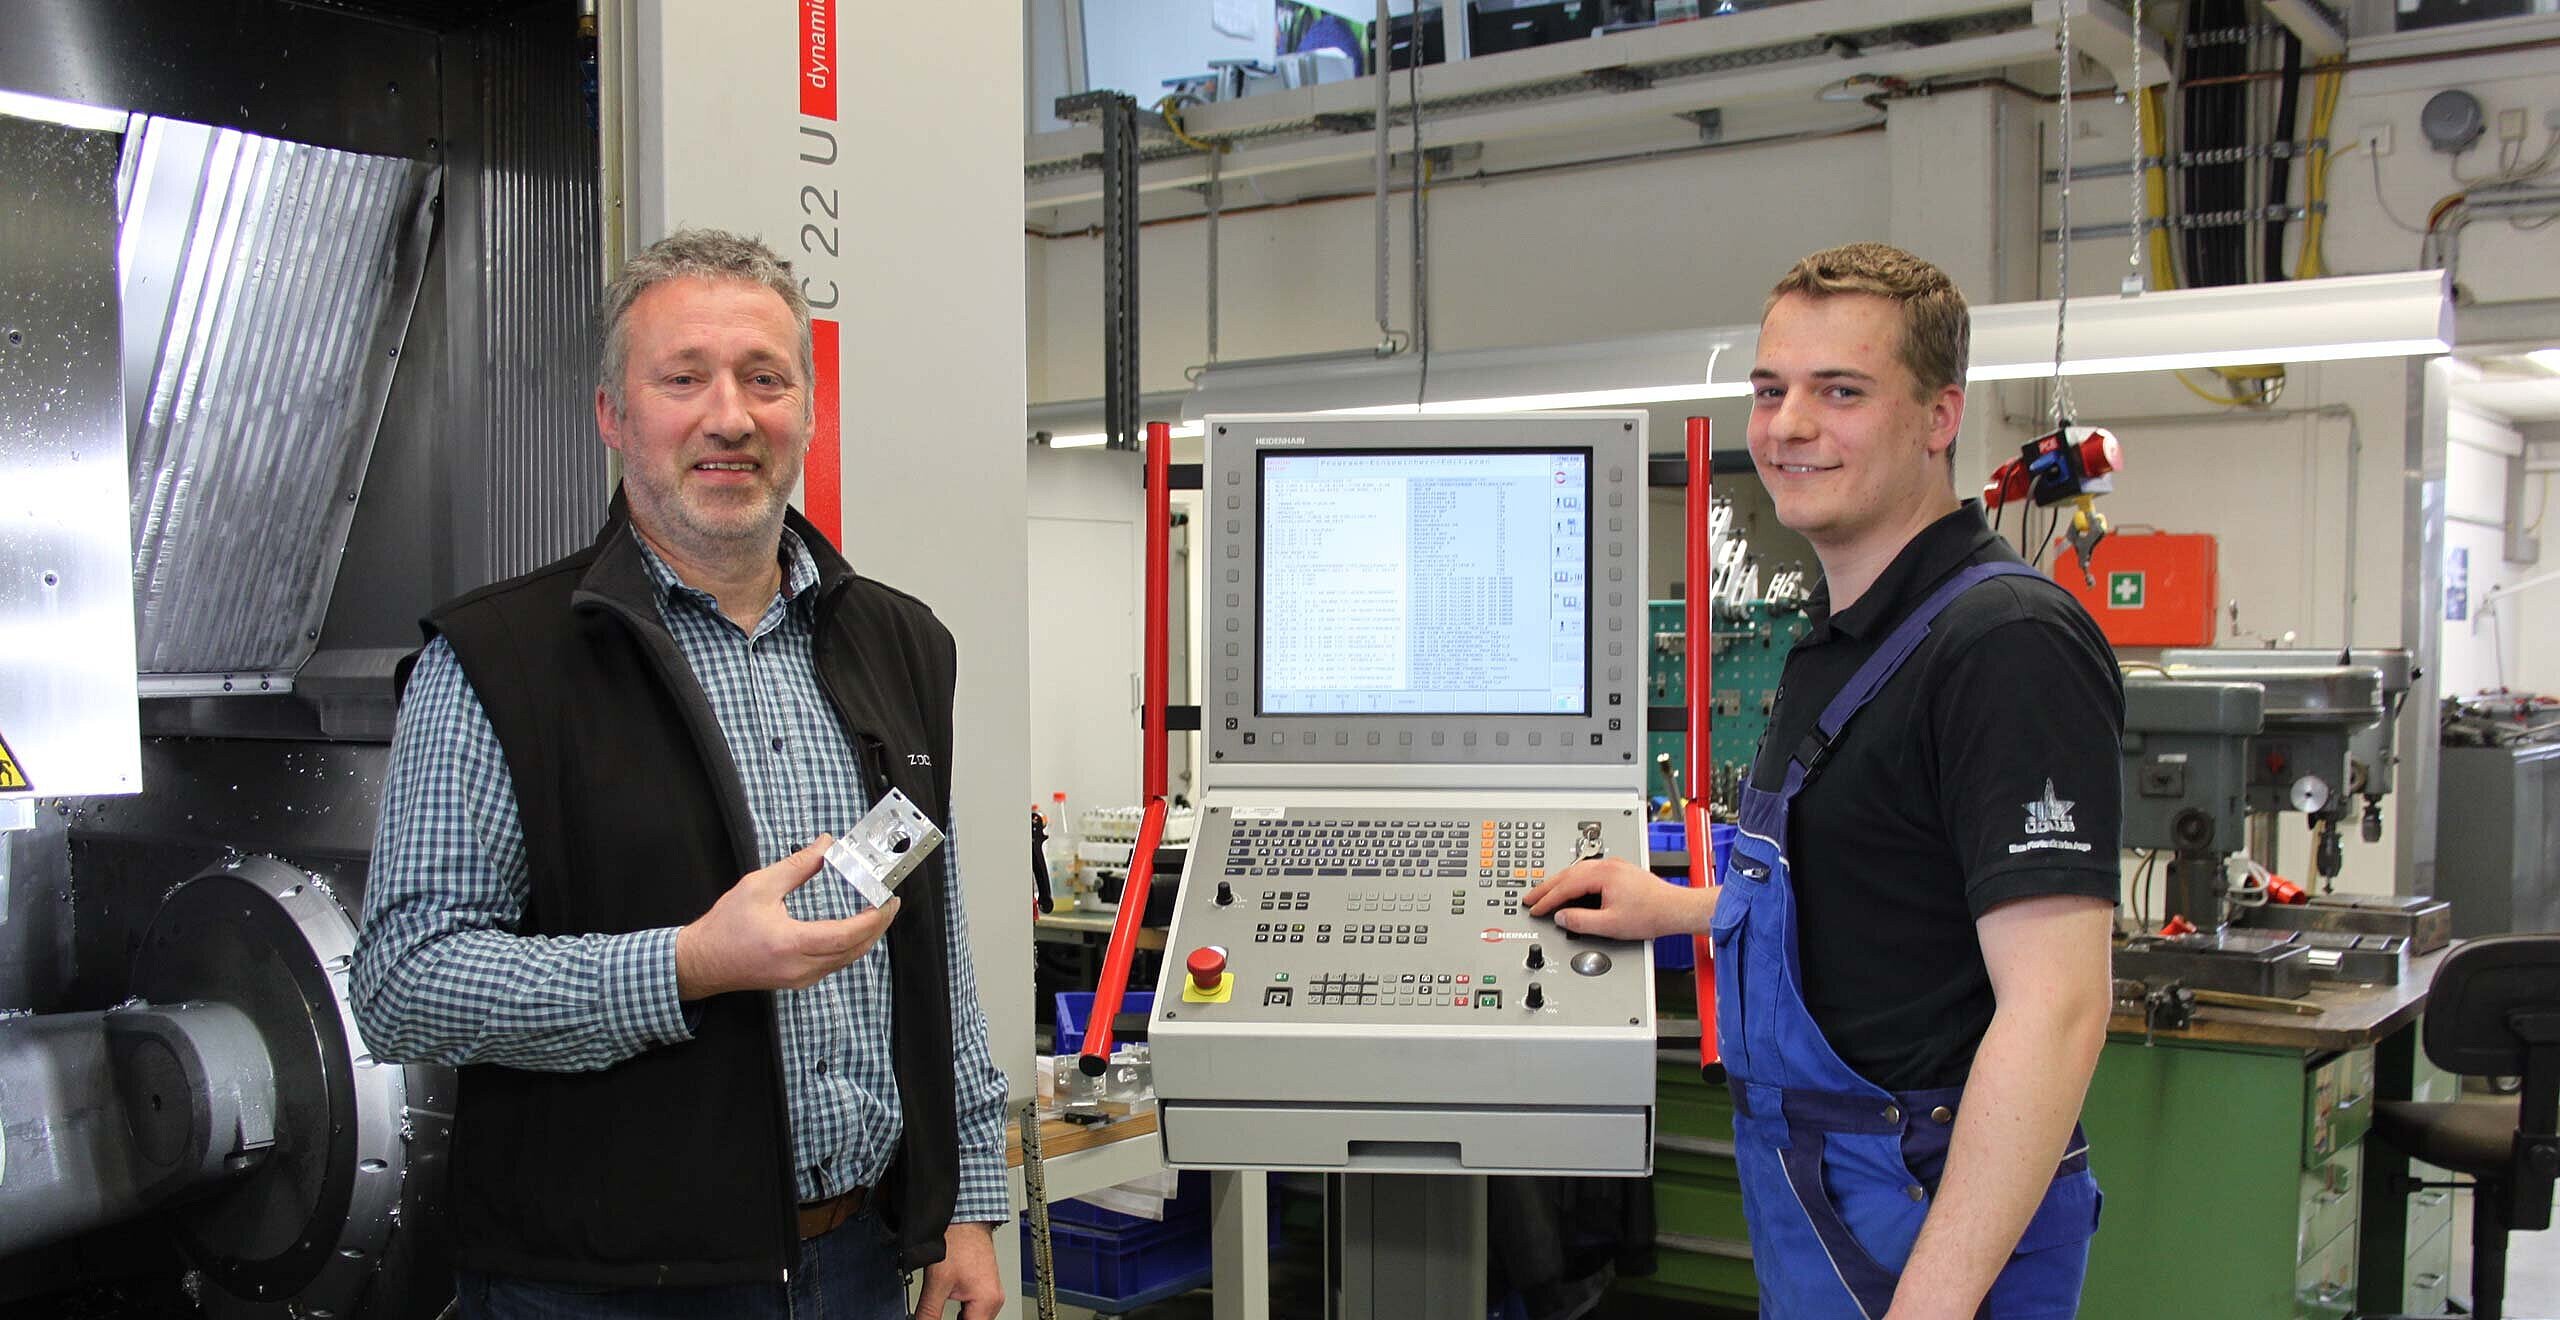 Von links Uwe Wambach, Betriebsleiter, und rechts Andreas Theis, Industriemechaniker, beide von Oculus Optikgeräte GmbH in Wetzlar, vor dem 5-Achsen- CNC-Hochleistungs-Bearbeitungszentrum C 22 U von Hermle